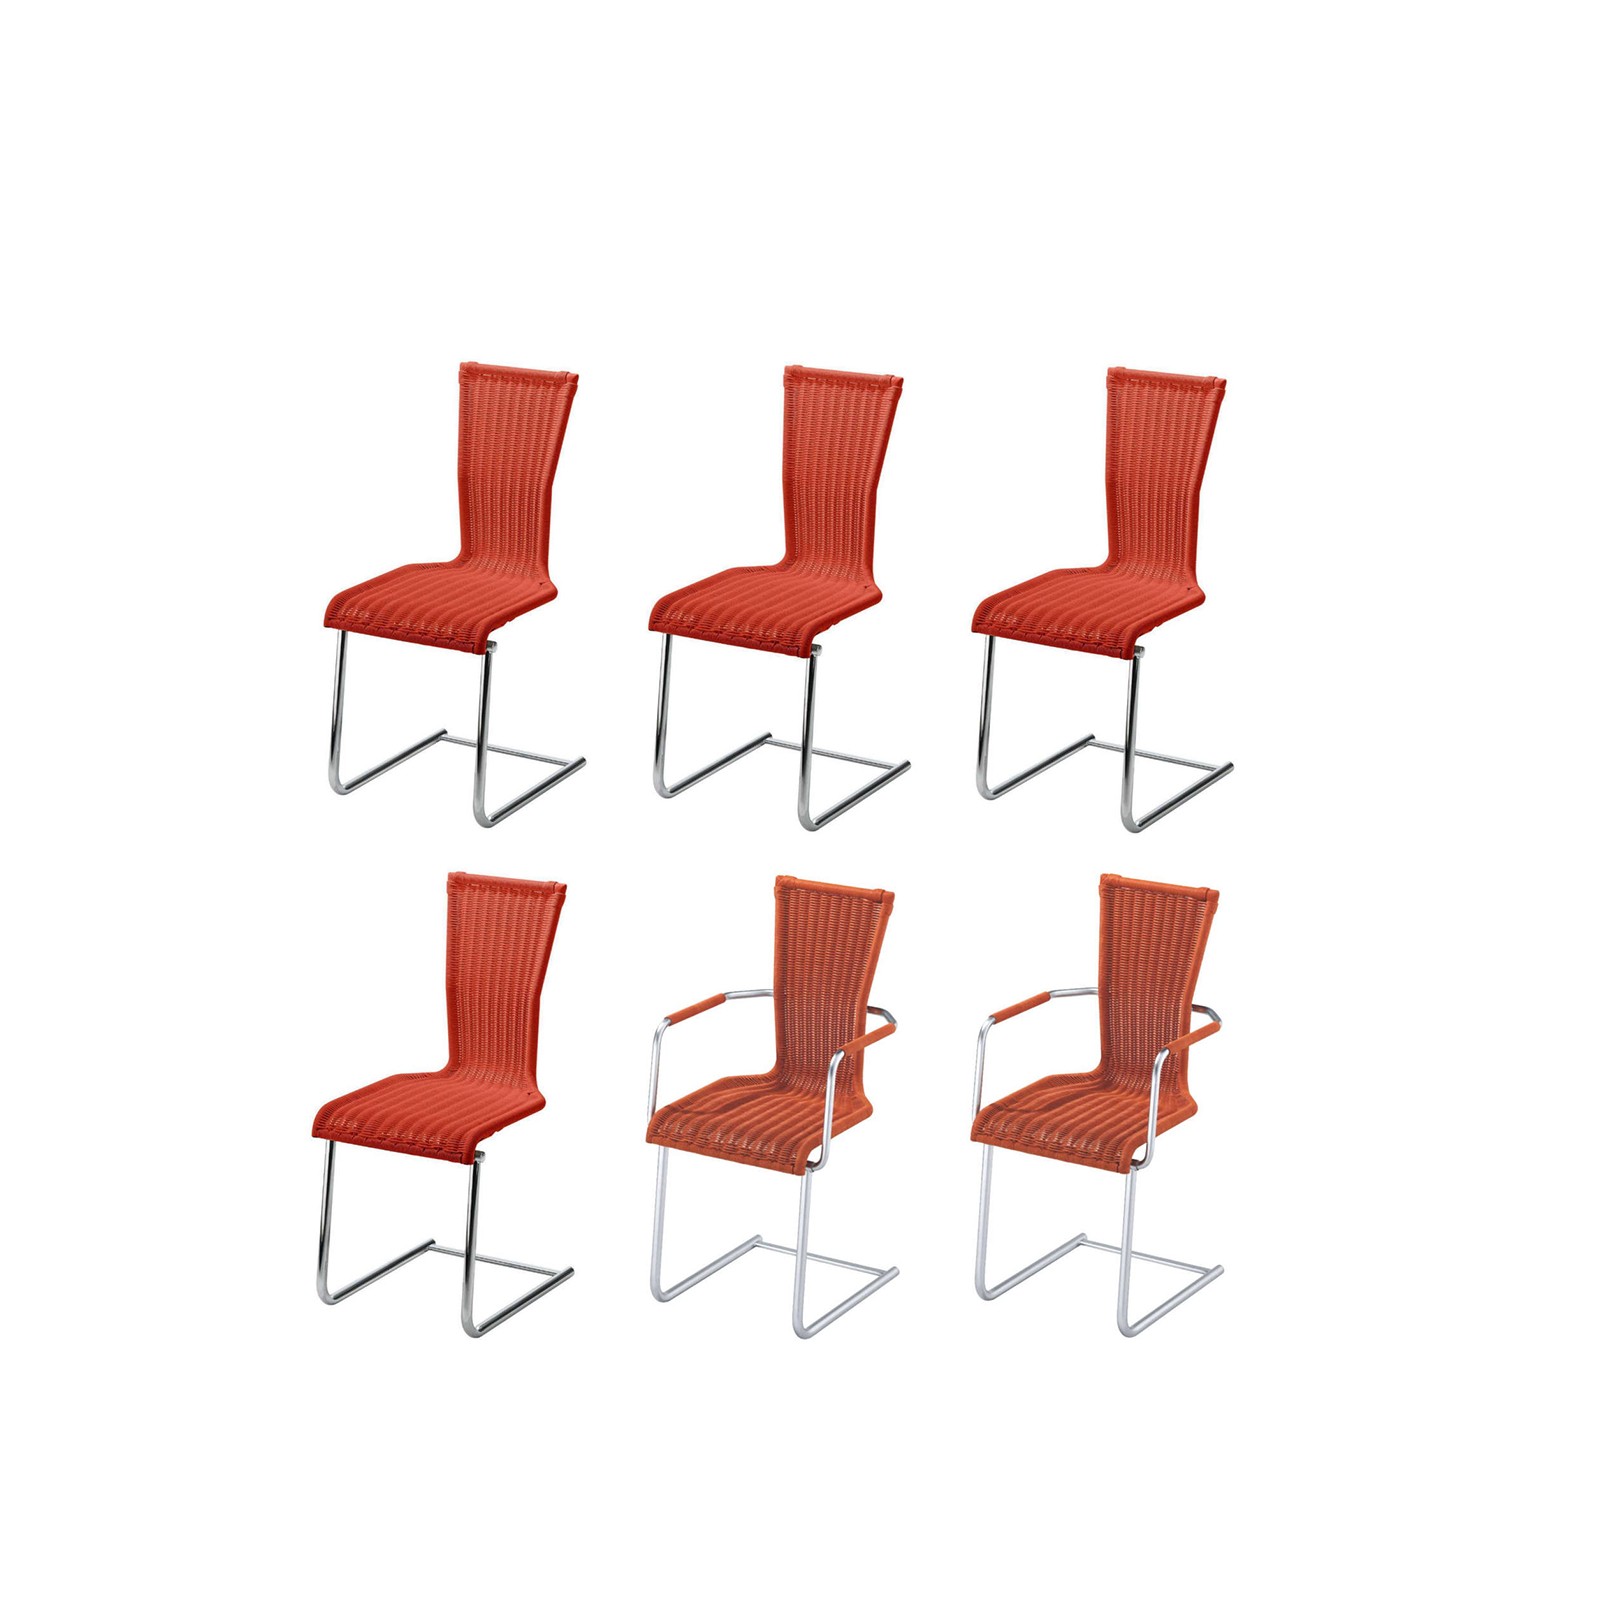 Rundrohr-Freischwinger-Stuhl mit Sitz und Rücken in hochwertigem Saleen-Geflecht